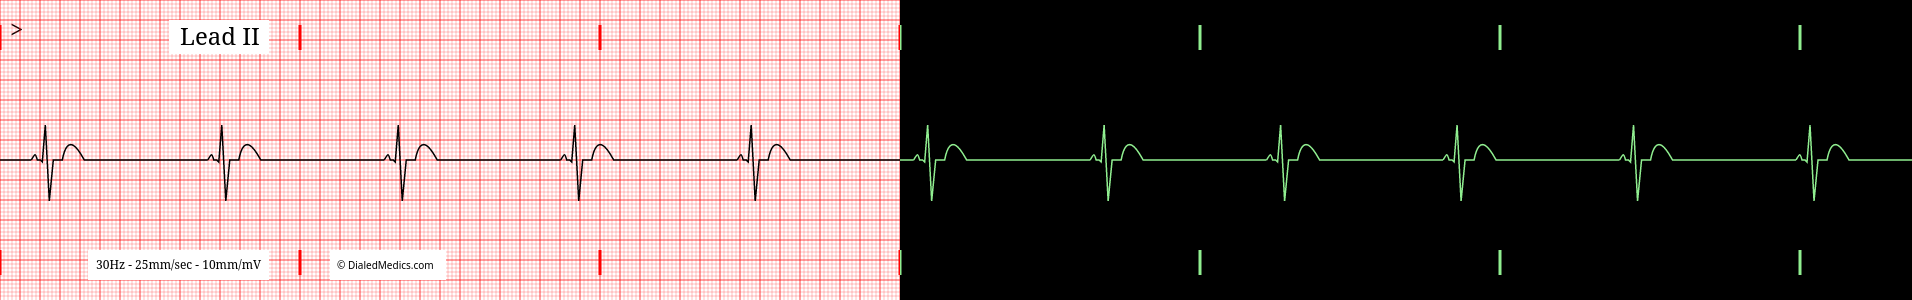 Sinus Bradycardia ECG example, split printout / monitor display.